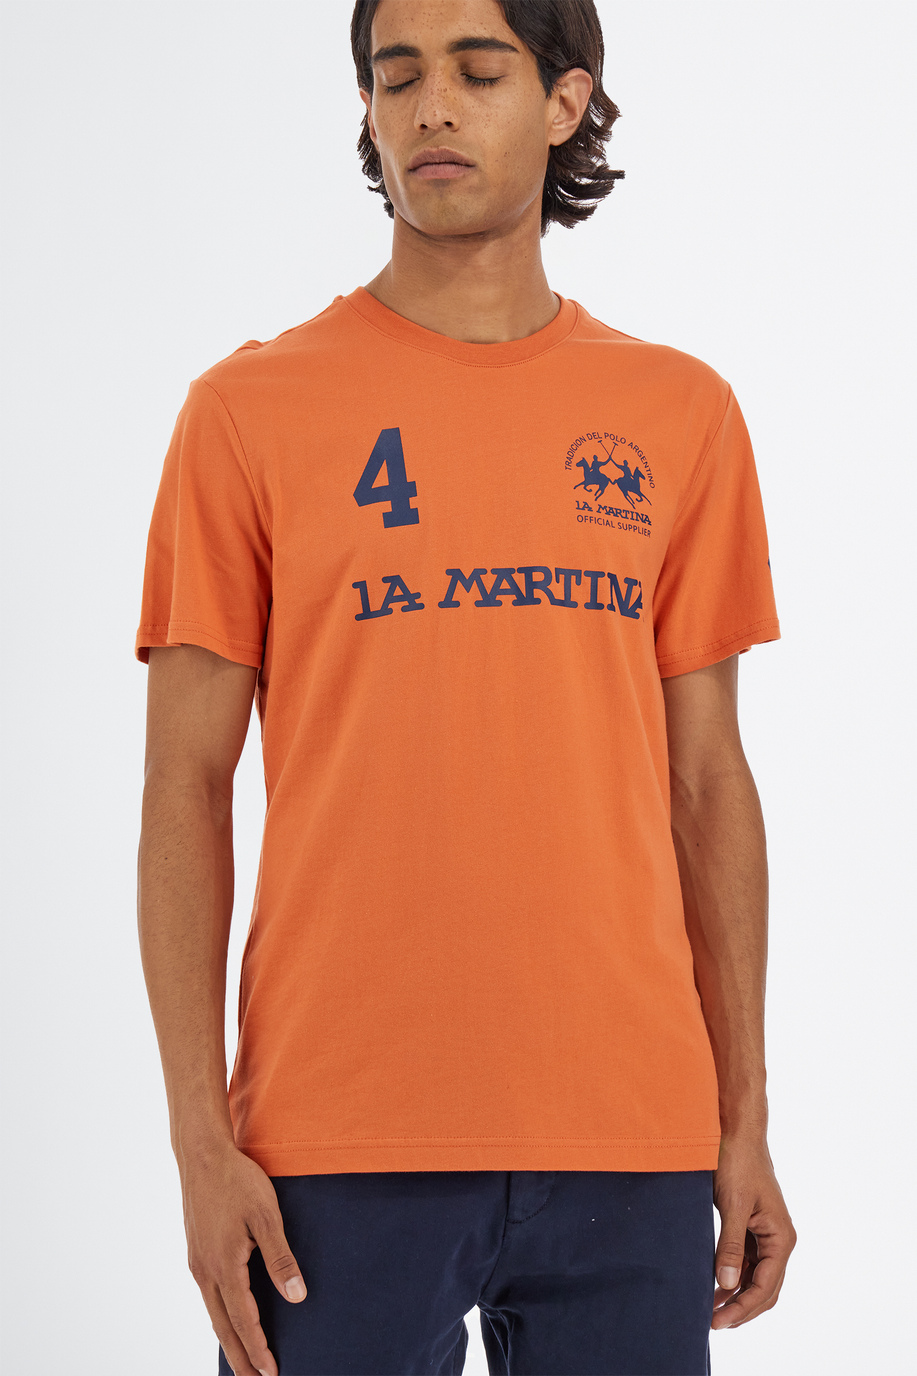 T-shirt da uomo a maniche corte girocollo in cotone 100% regular fit - T-shirts | La Martina - Official Online Shop